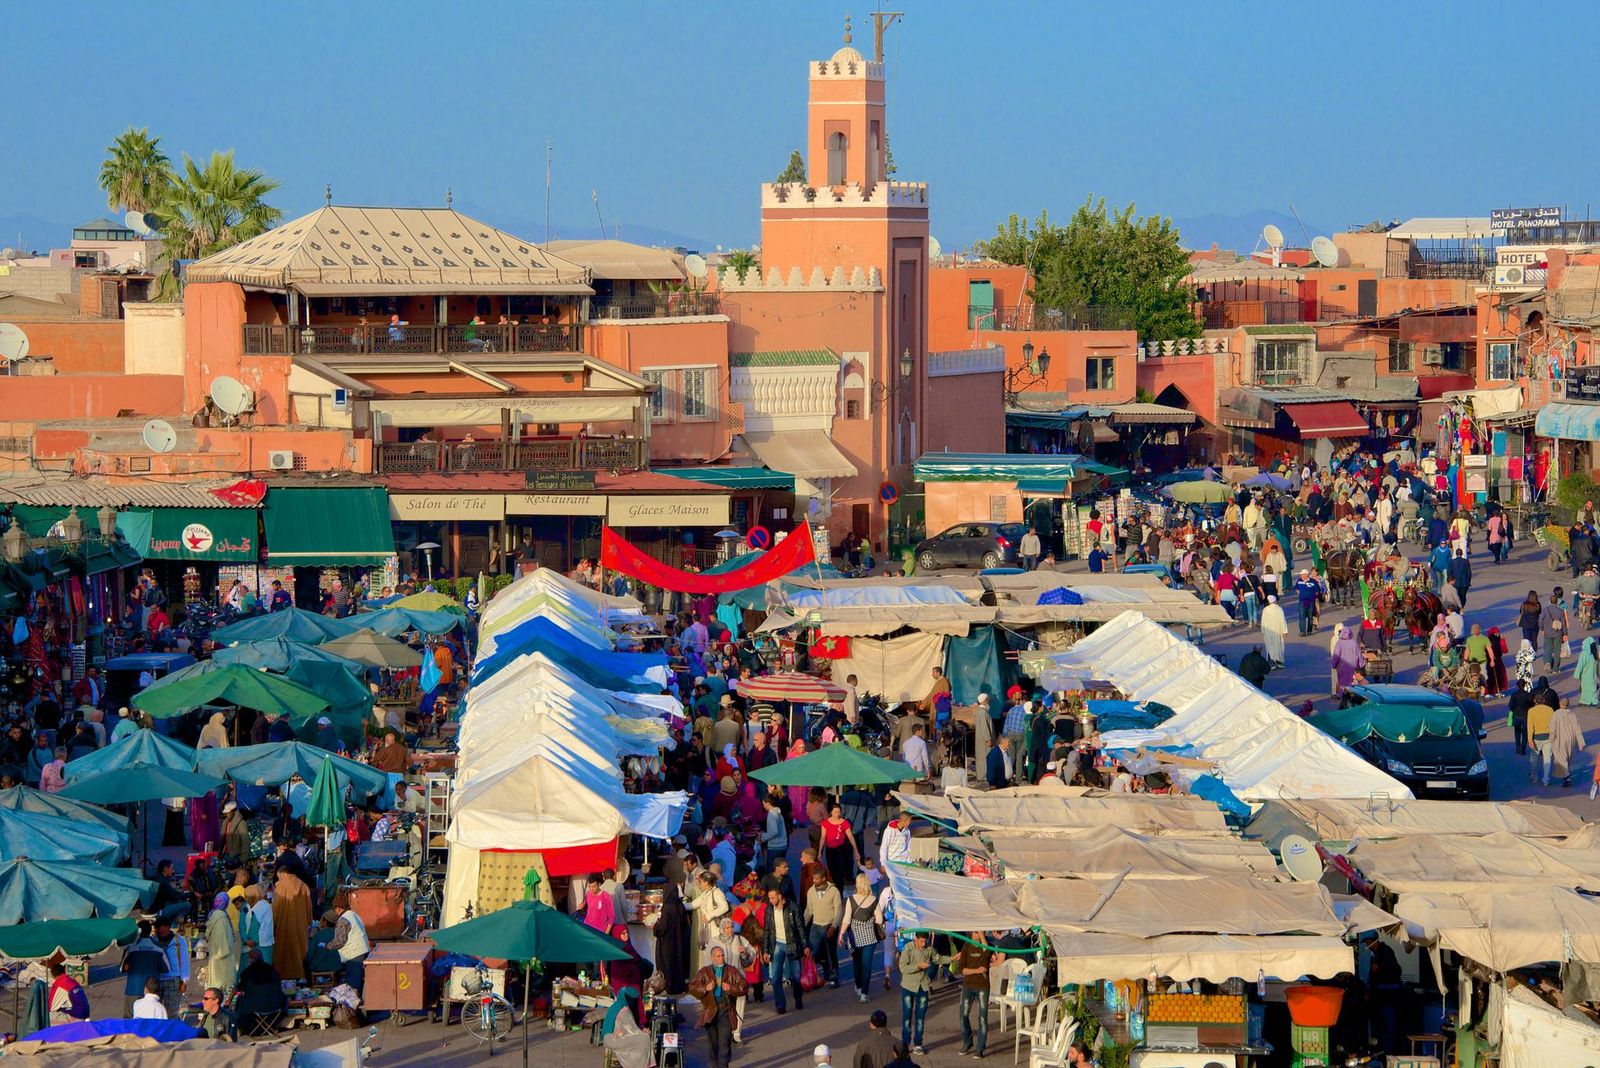 المغرب يعتمد خارطة طريق لقطاع السياحة بـ580 مليون دولار